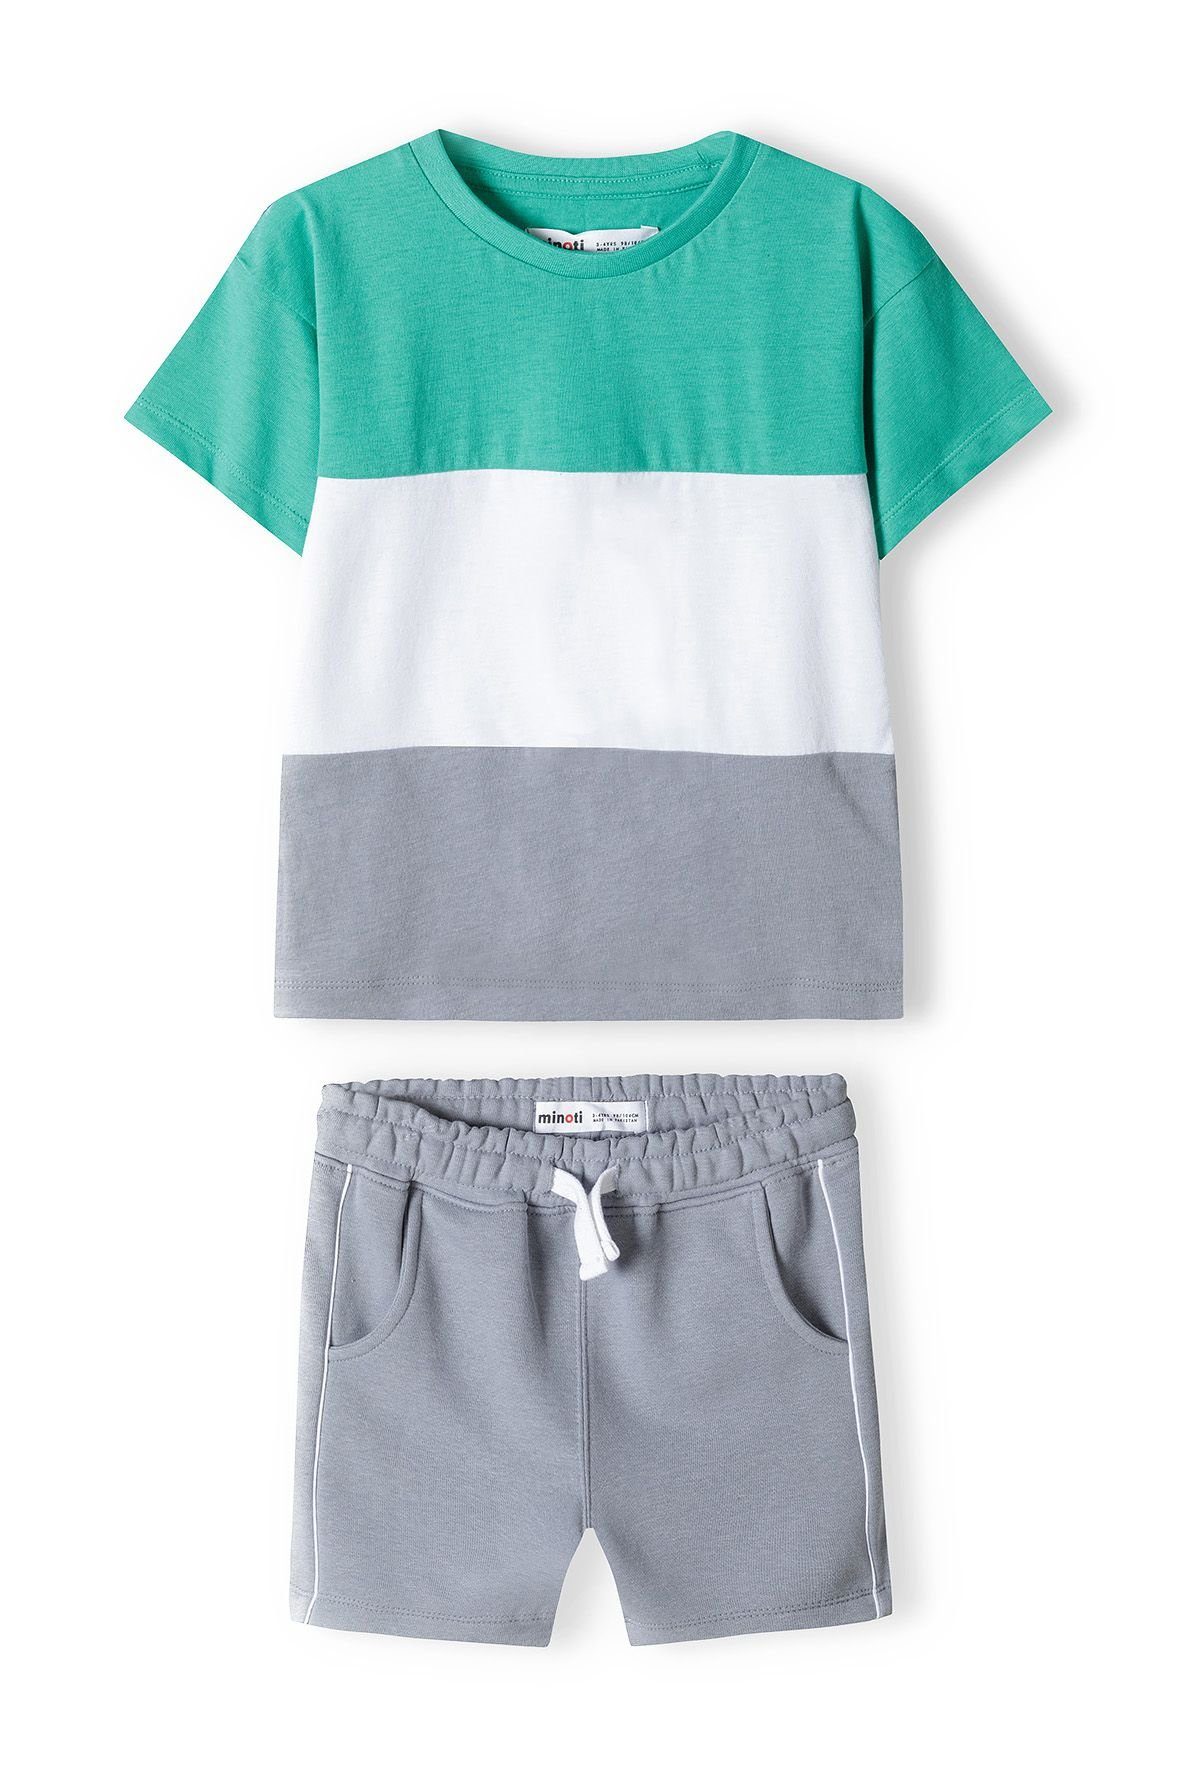 MINOTI T-Shirt & Sweatbermudas T-Shirt und Shorts Set (12m-8y) Grün